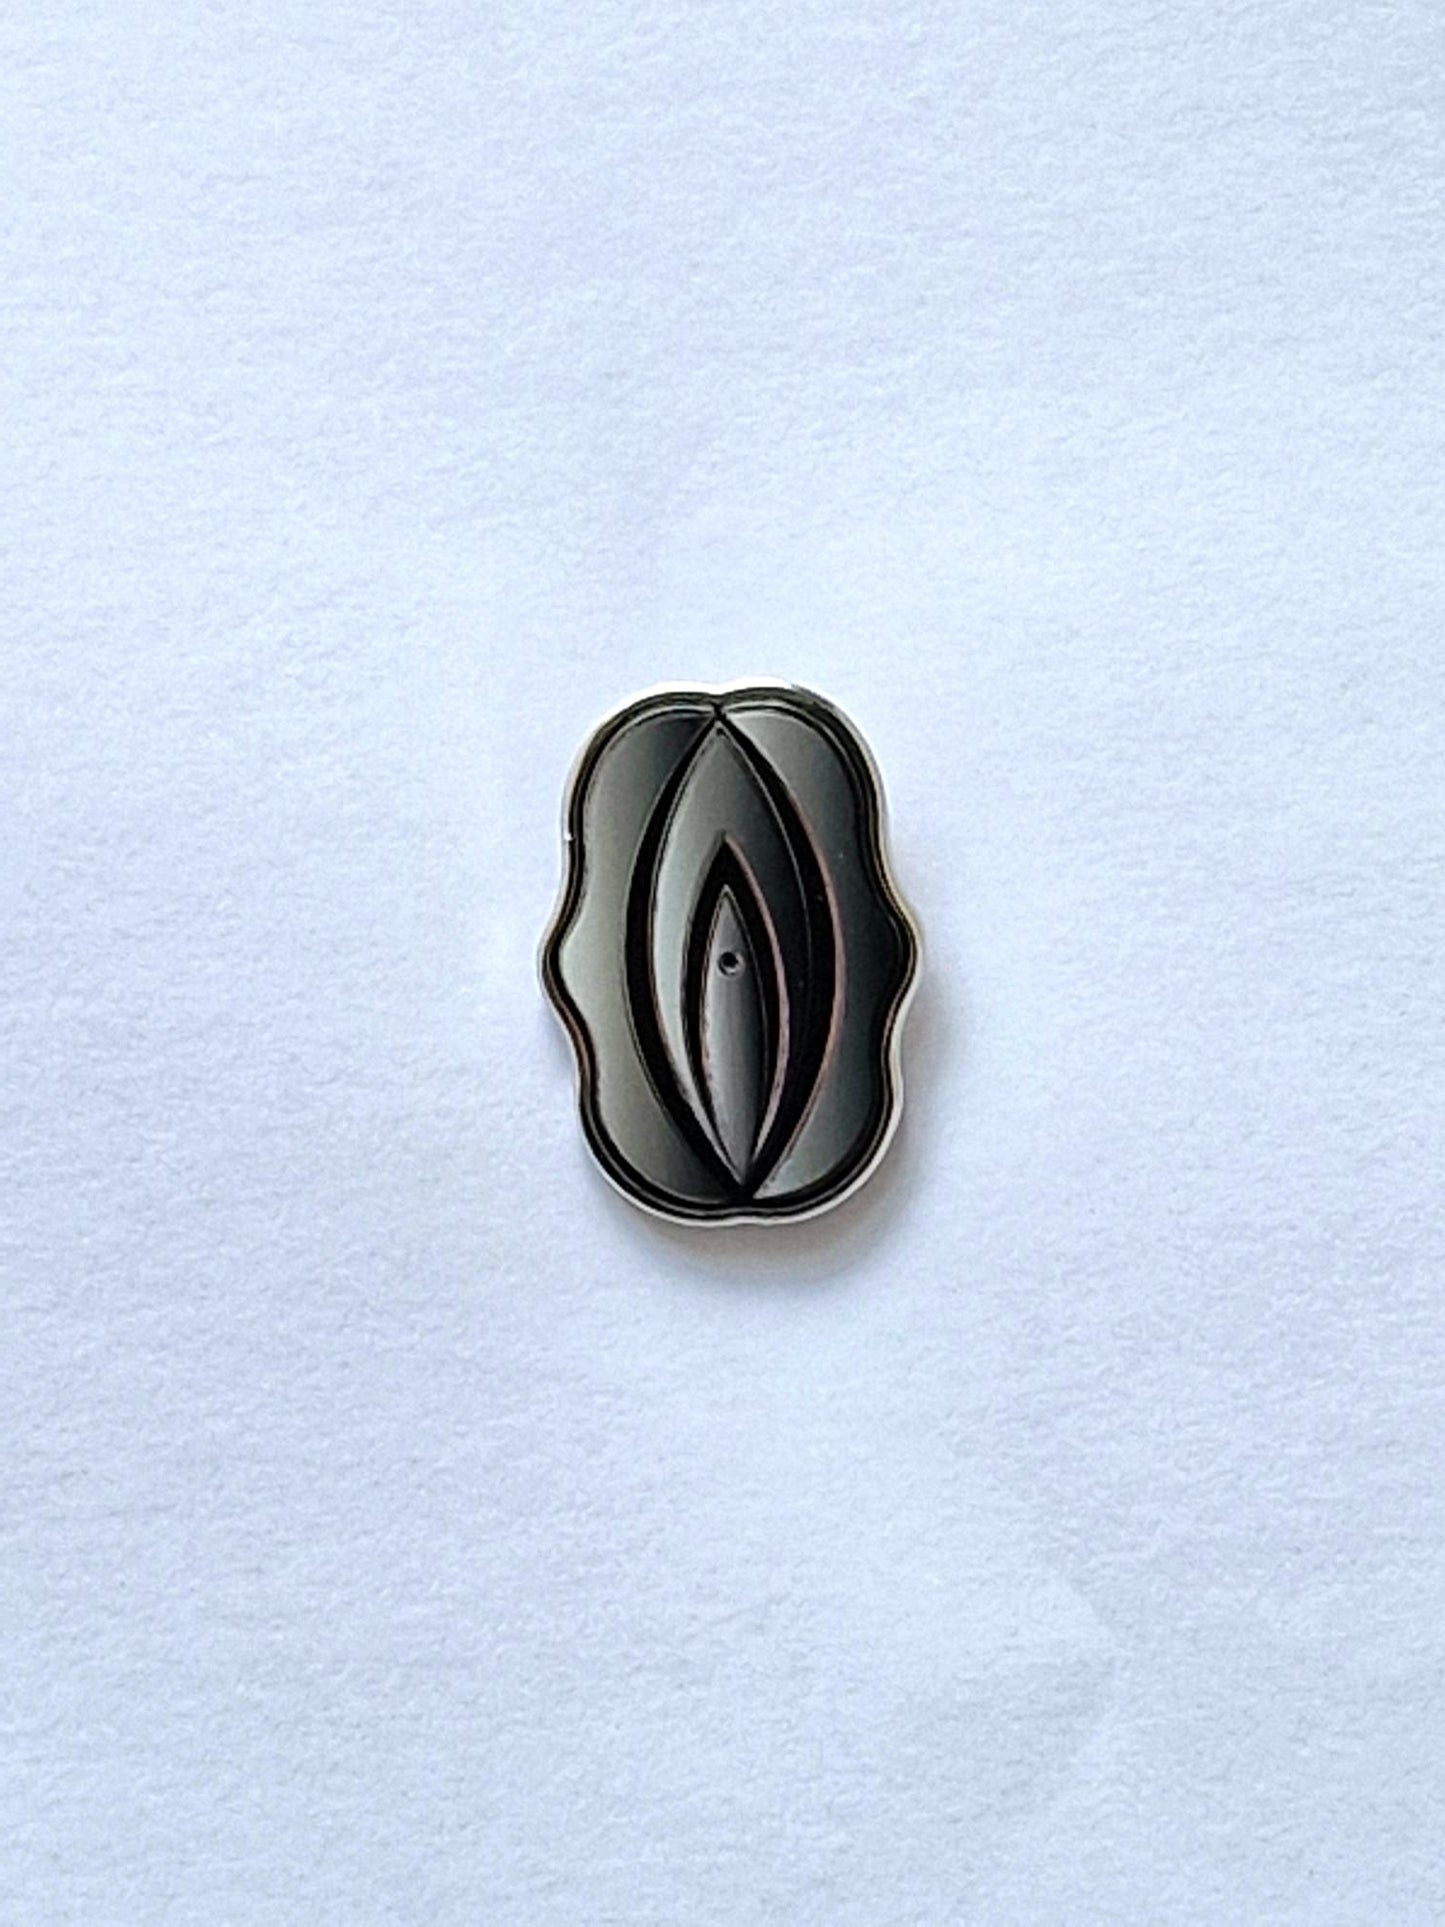 Rolig och annorlunda pins i form av en silver och svart fiffi.